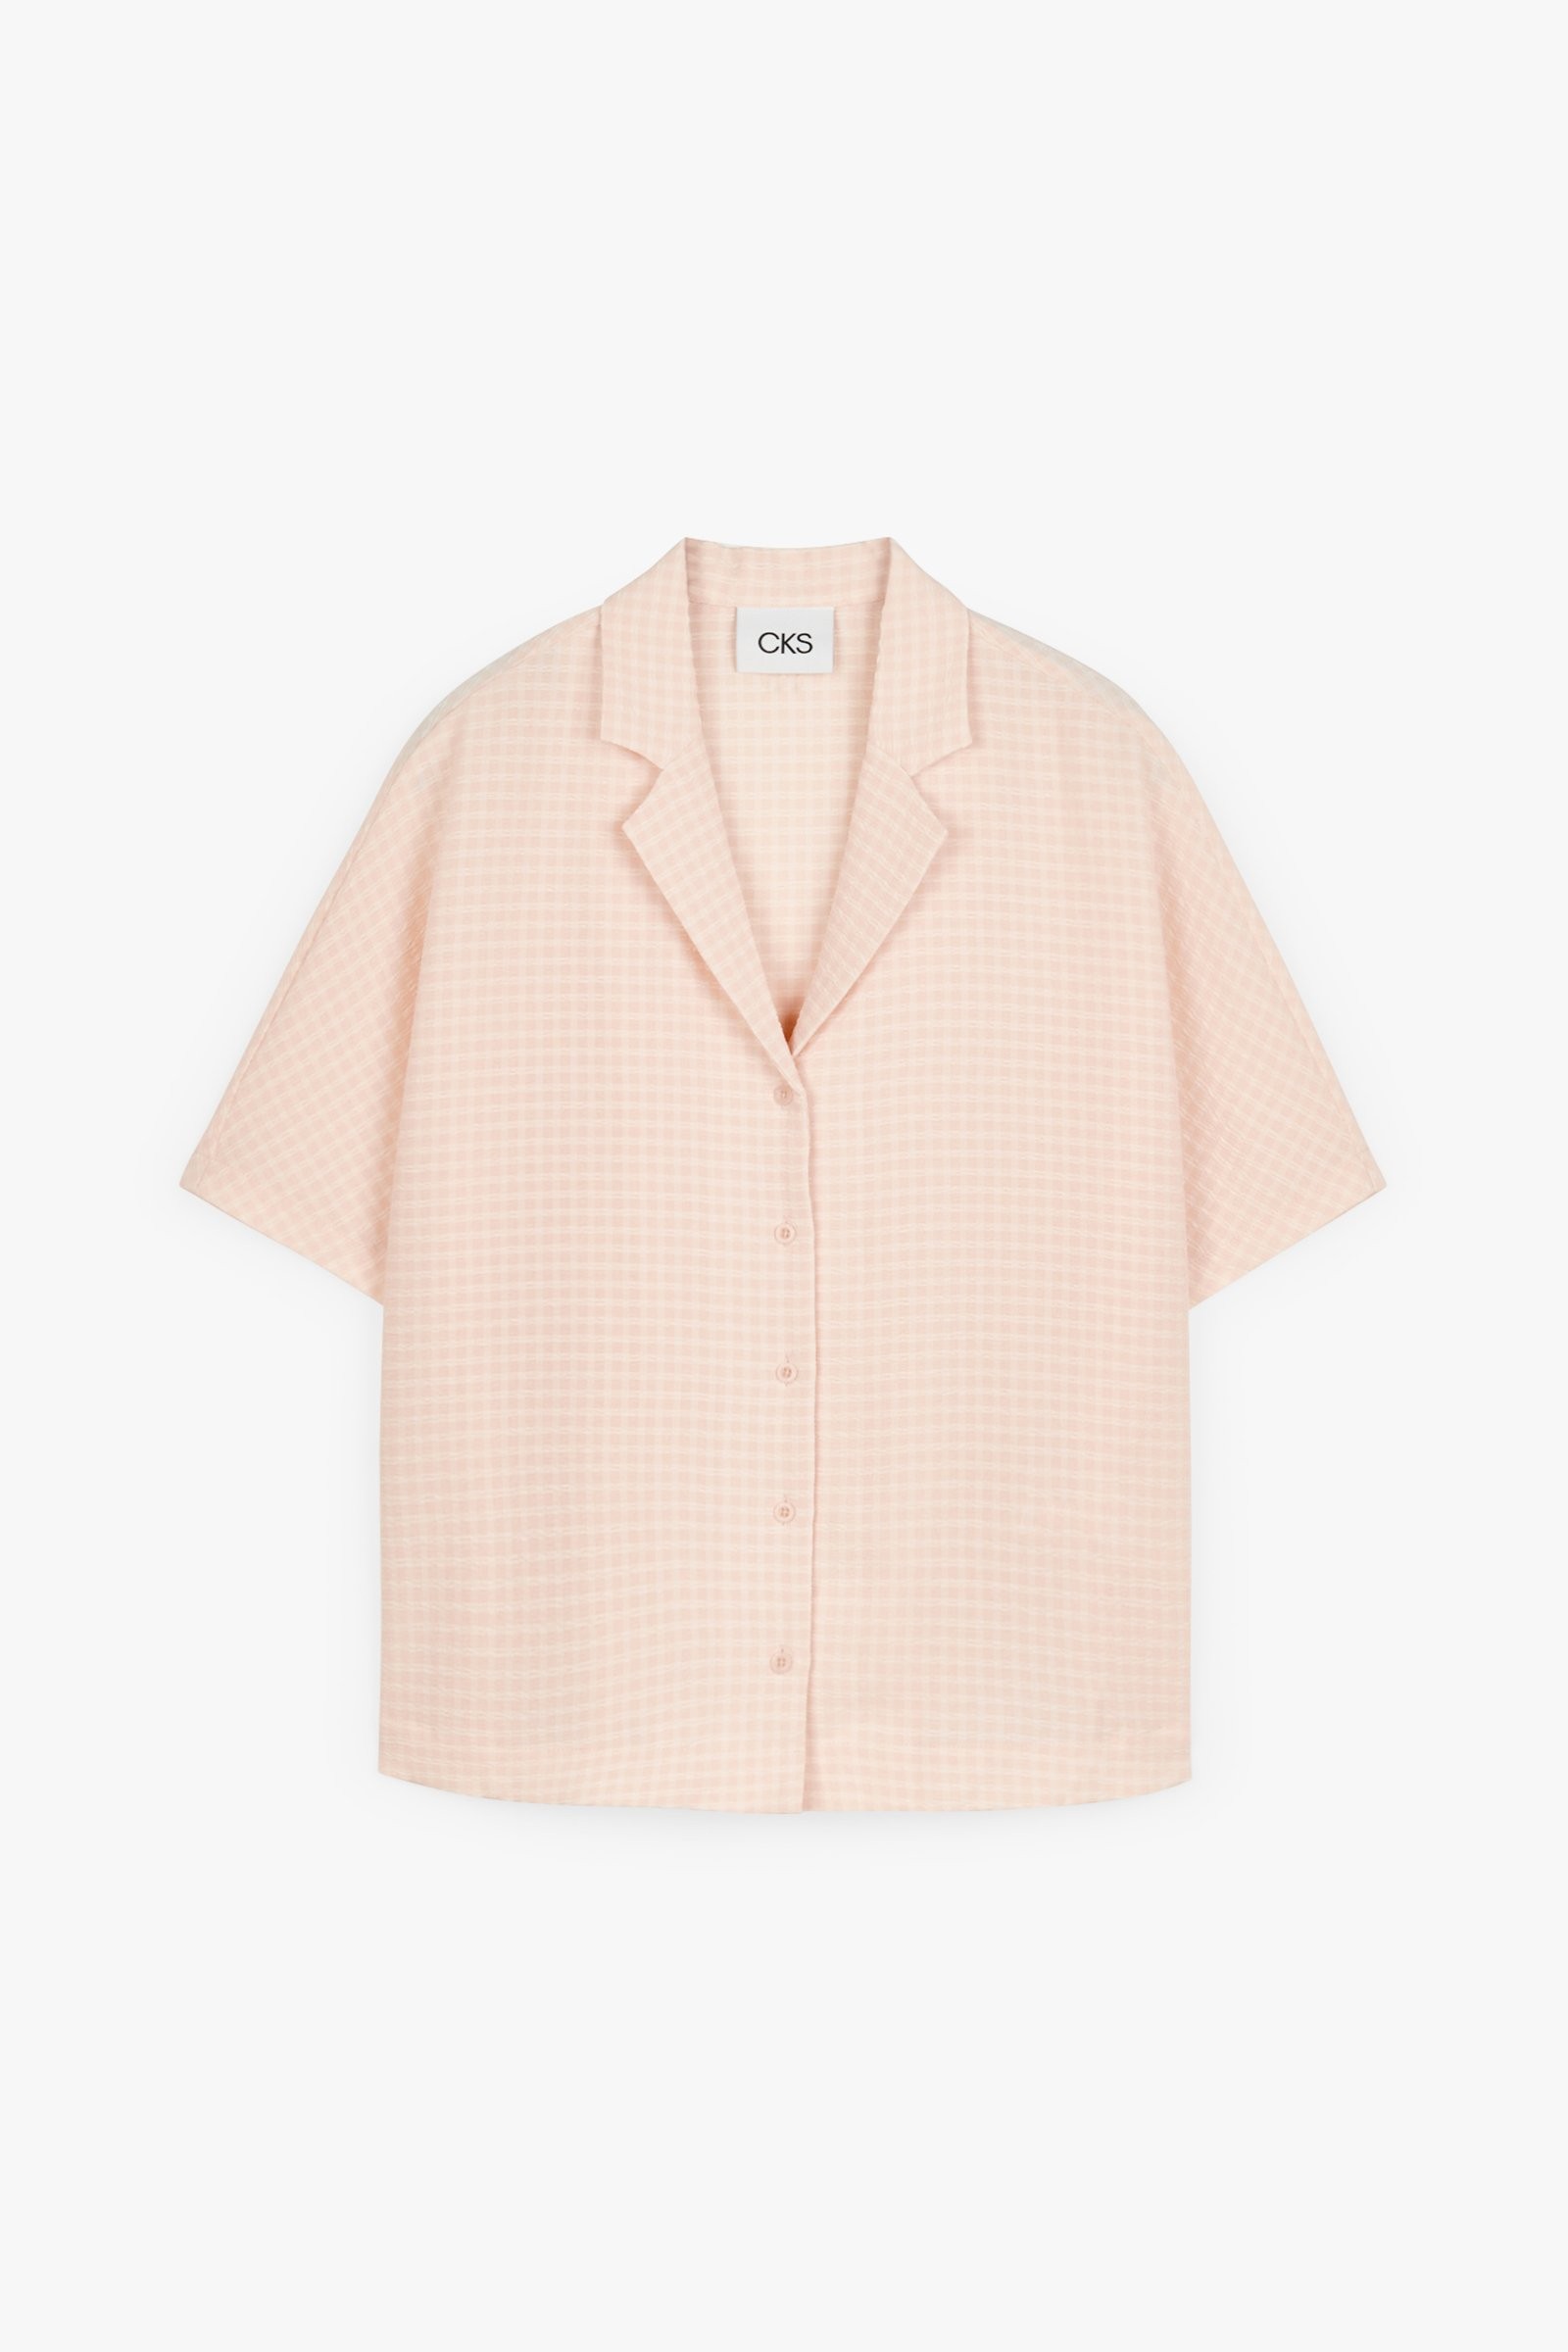 CKS Dames - RONELA - blouse korte mouwen - lichtroze